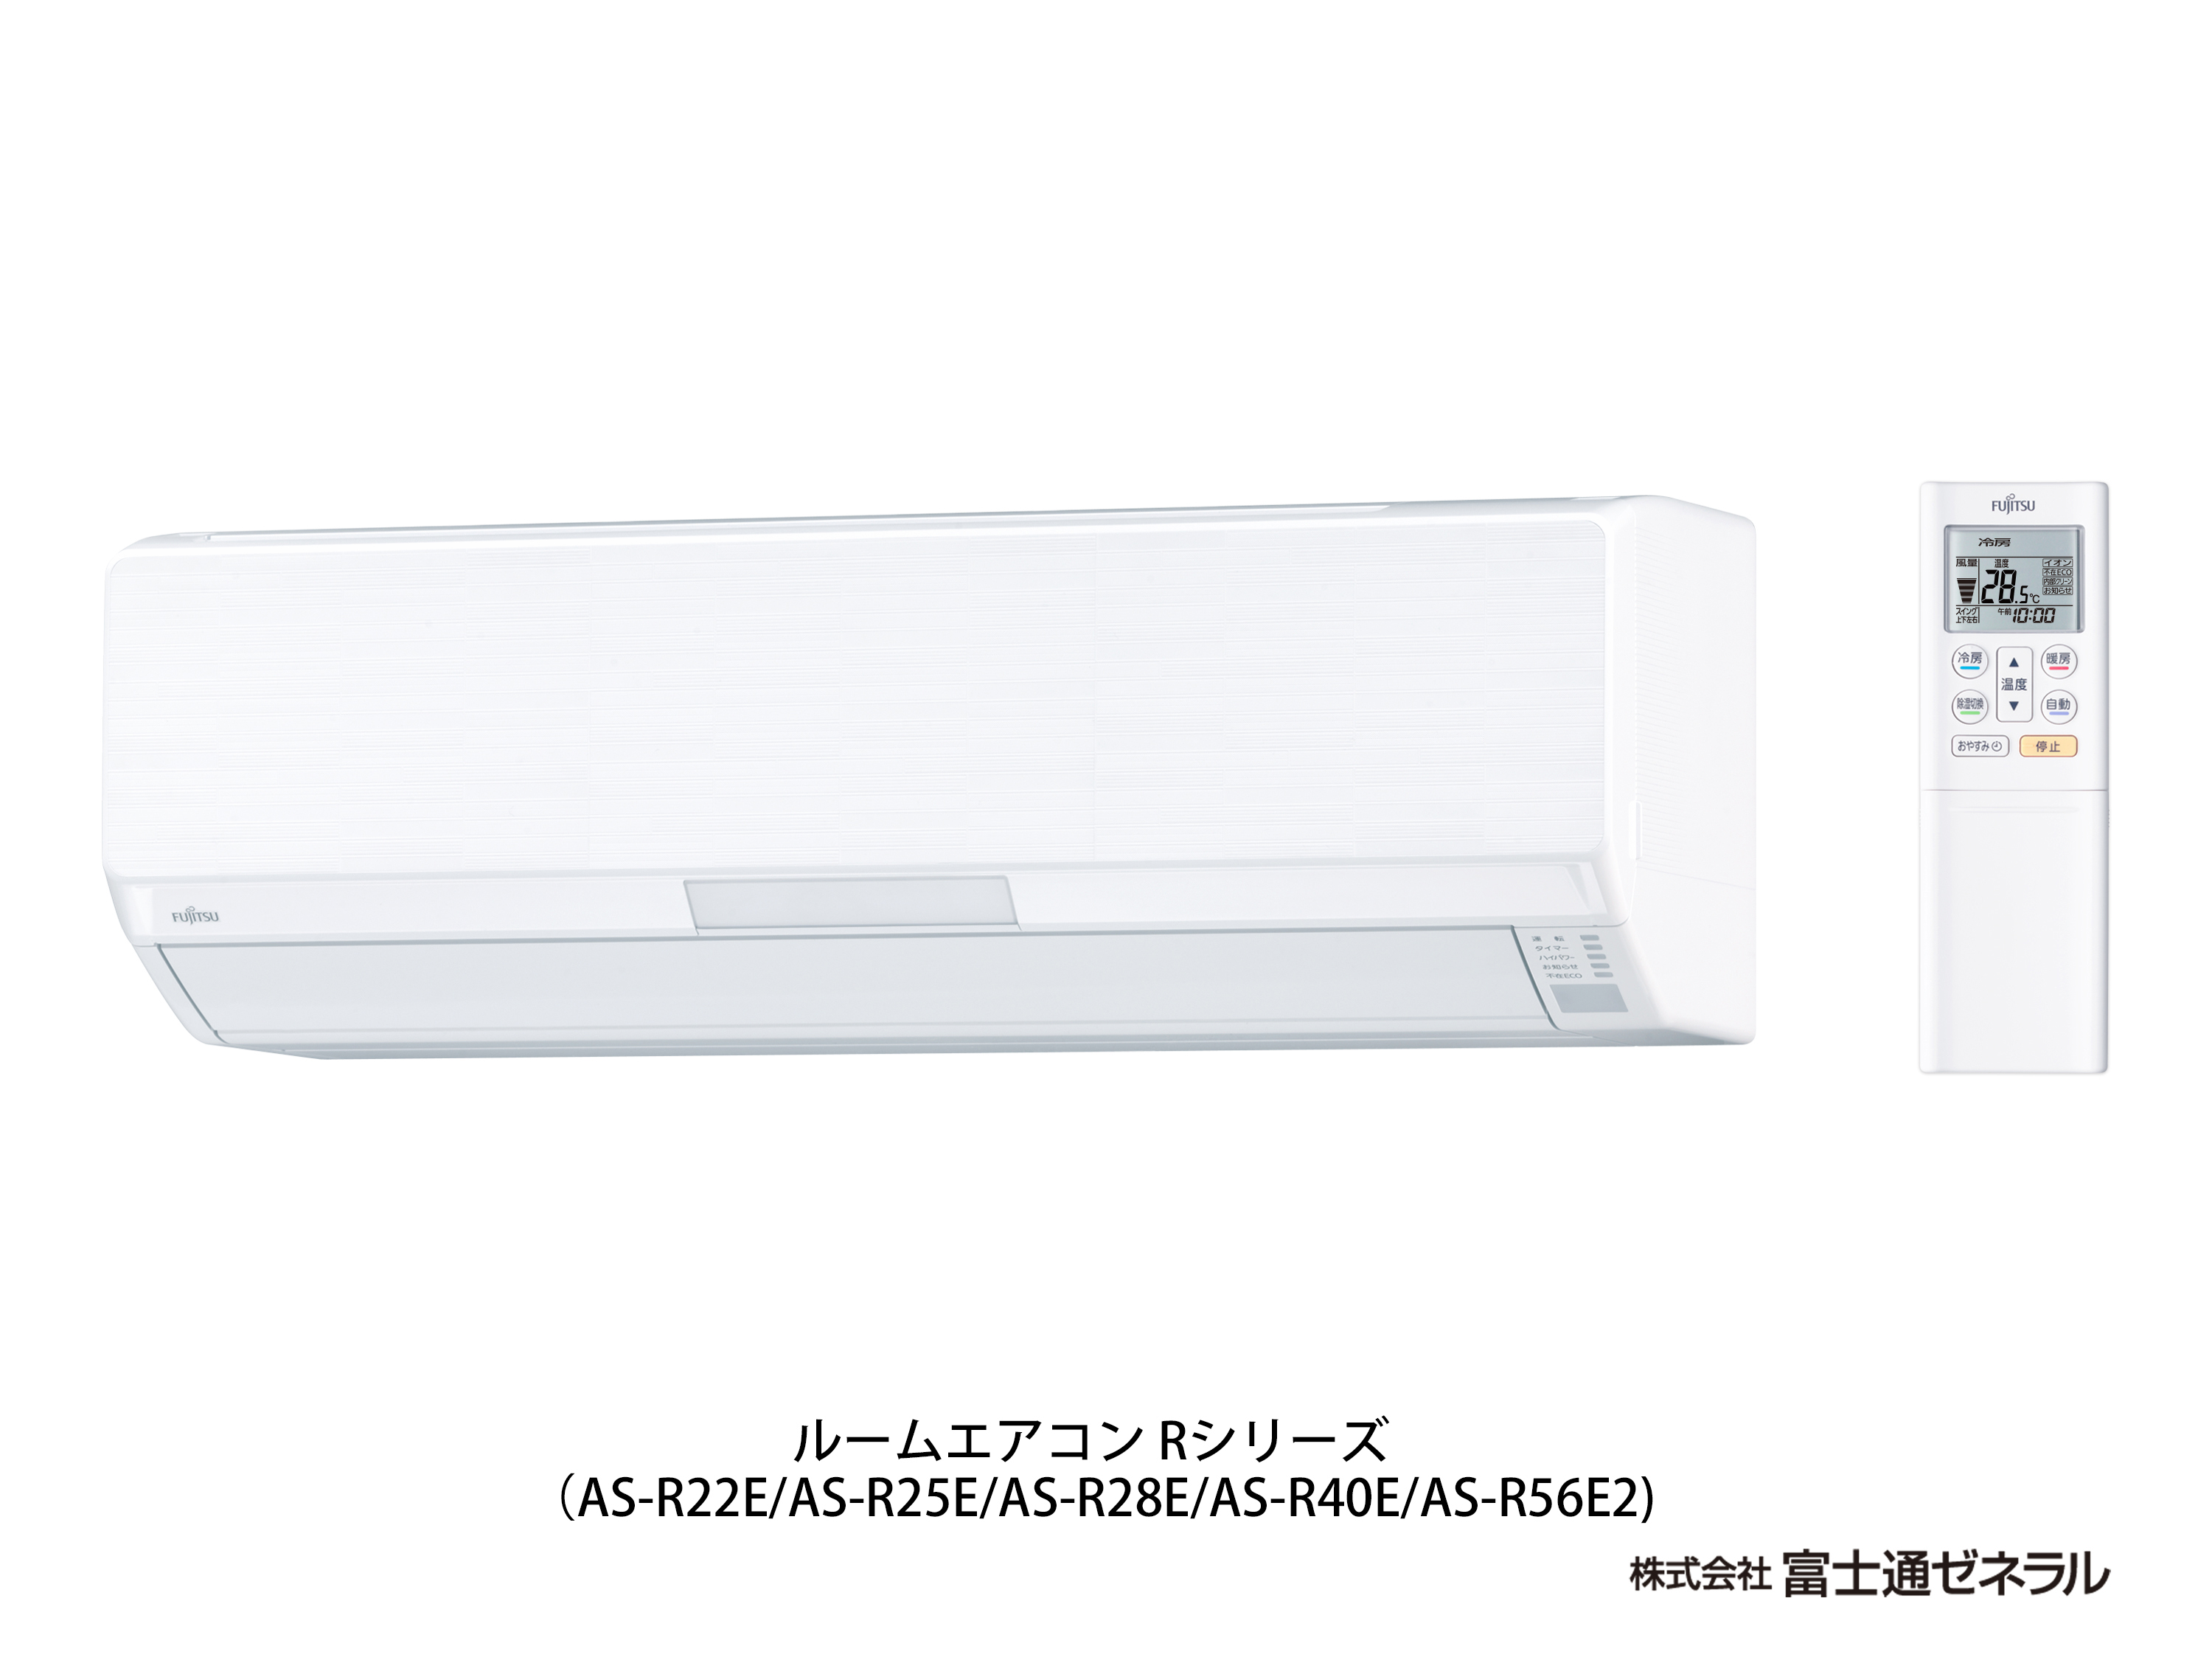 AS-R22E 仕様詳細 2015年 エアコン R シリーズ - 富士通ゼネラル JP